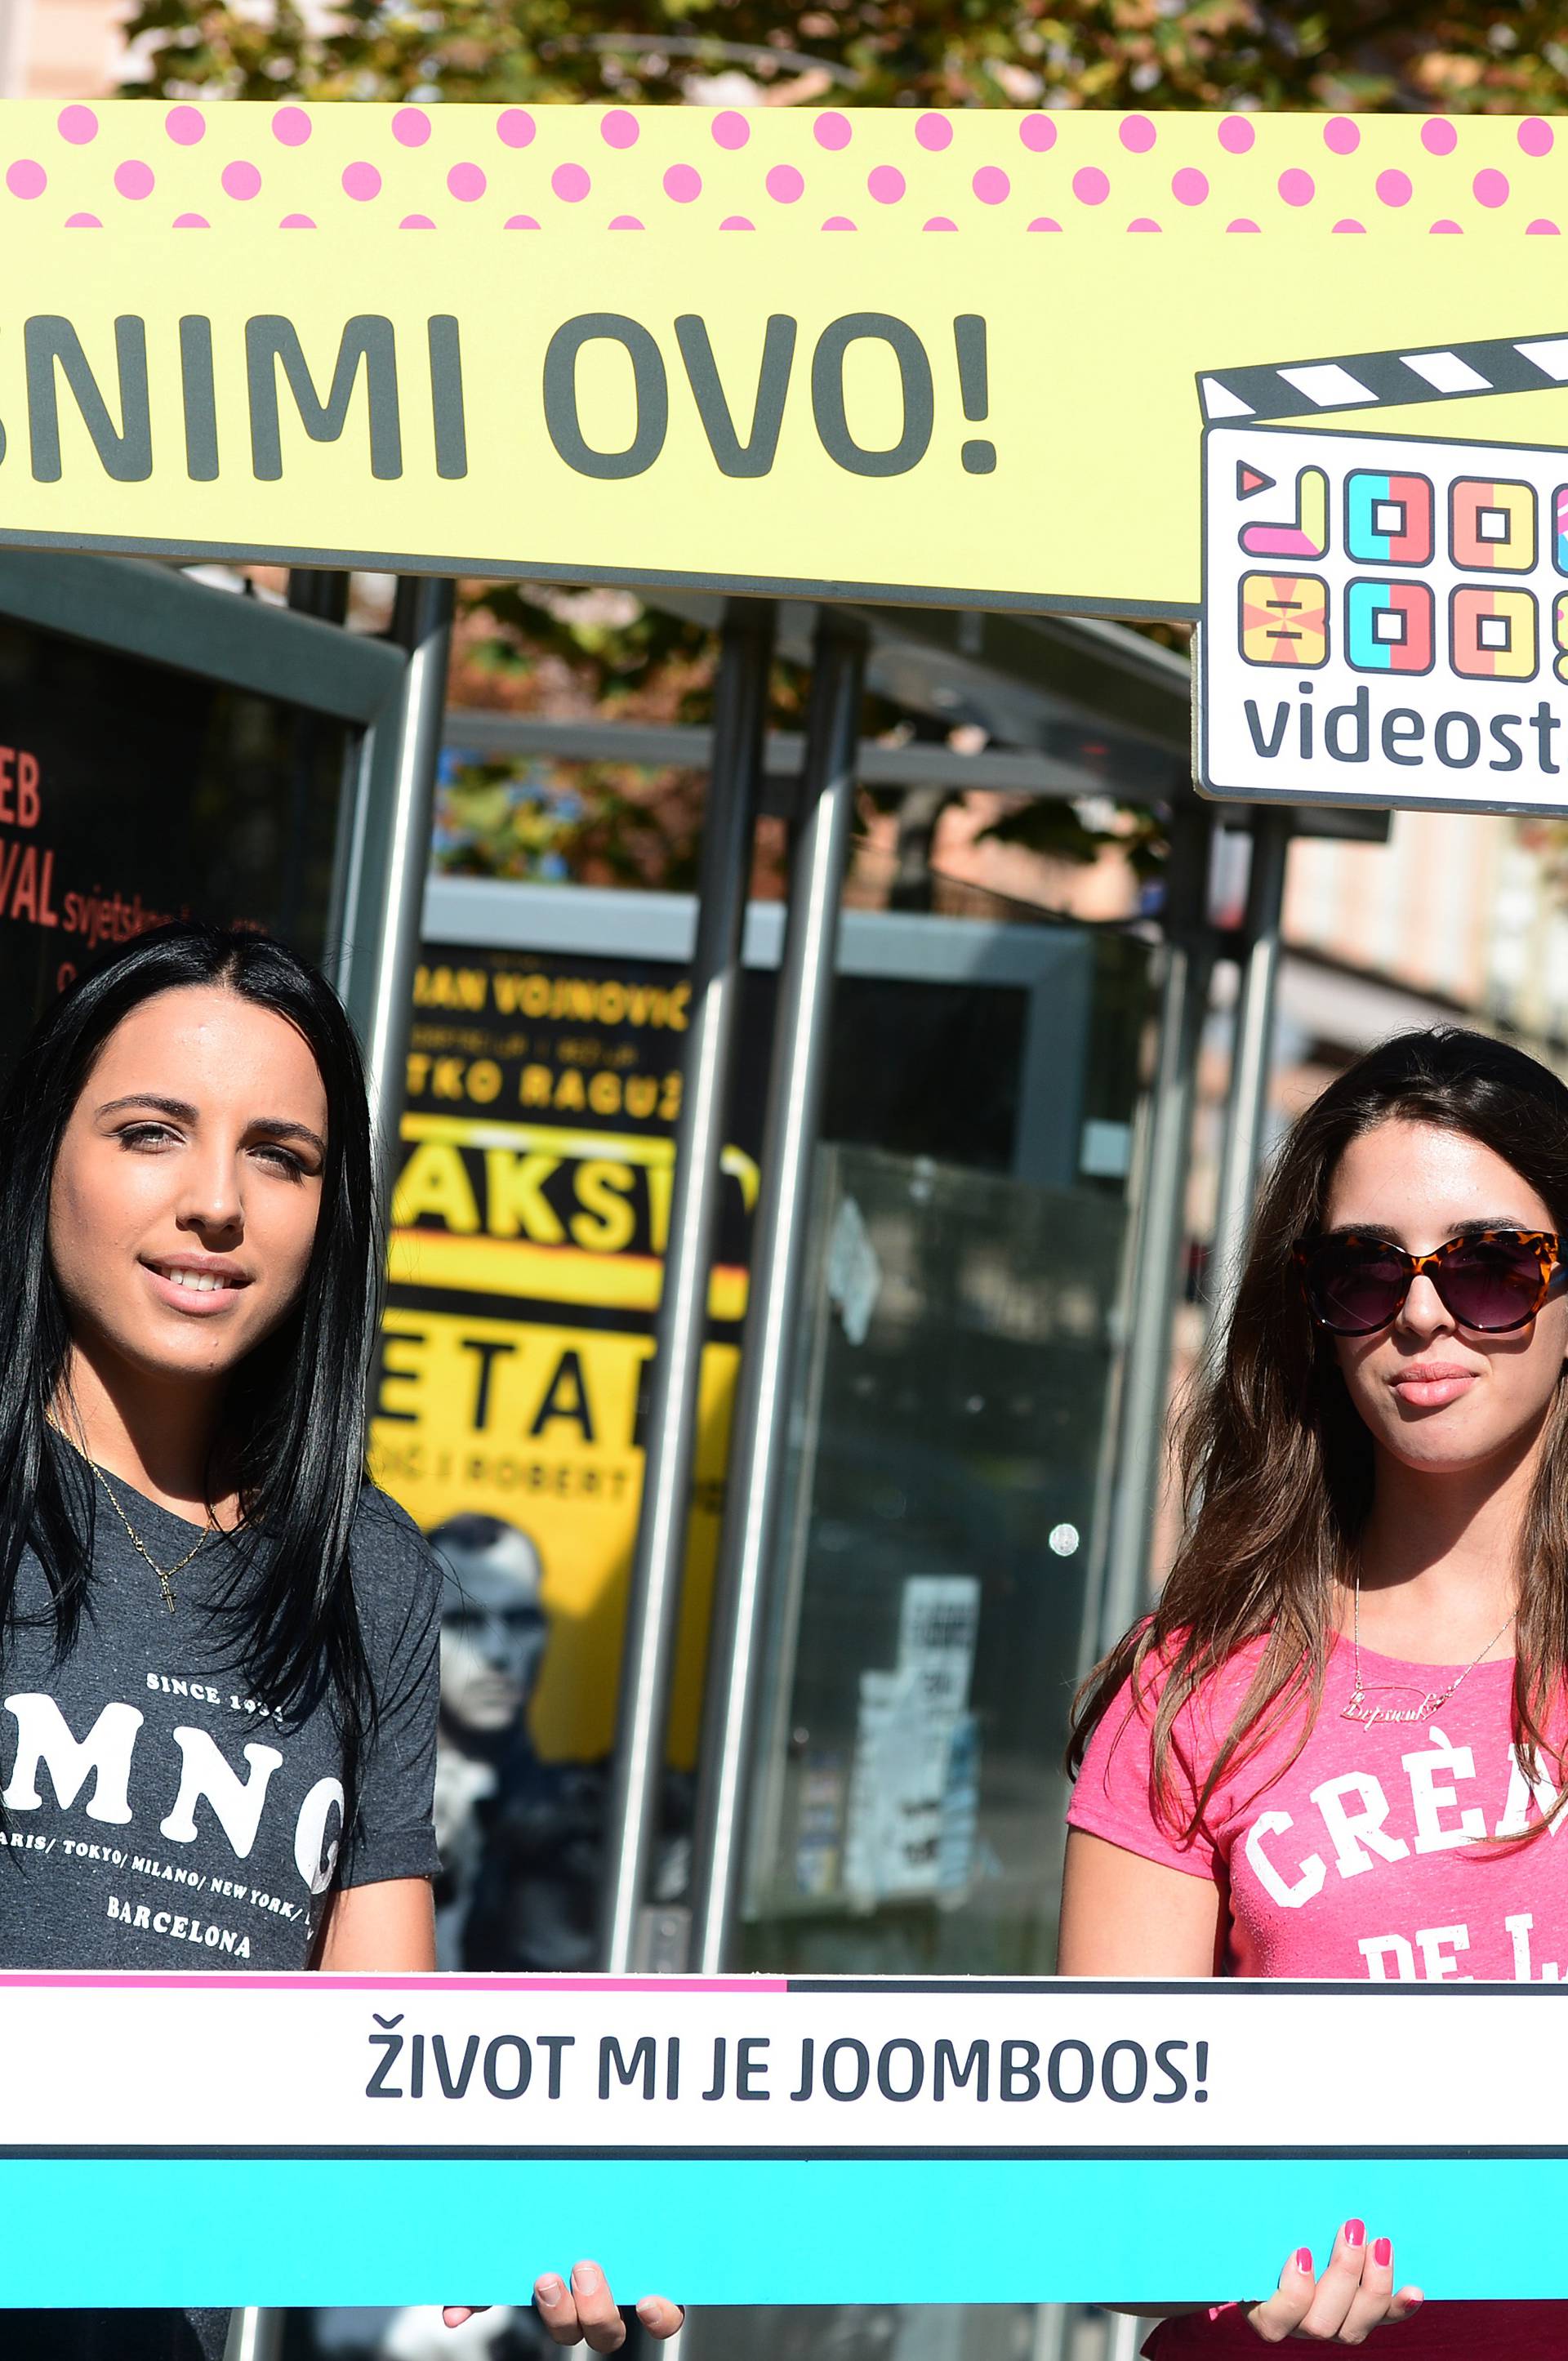 Atraktivne hostese u Zagrebu  tražile novu zvijezdu Youtubea